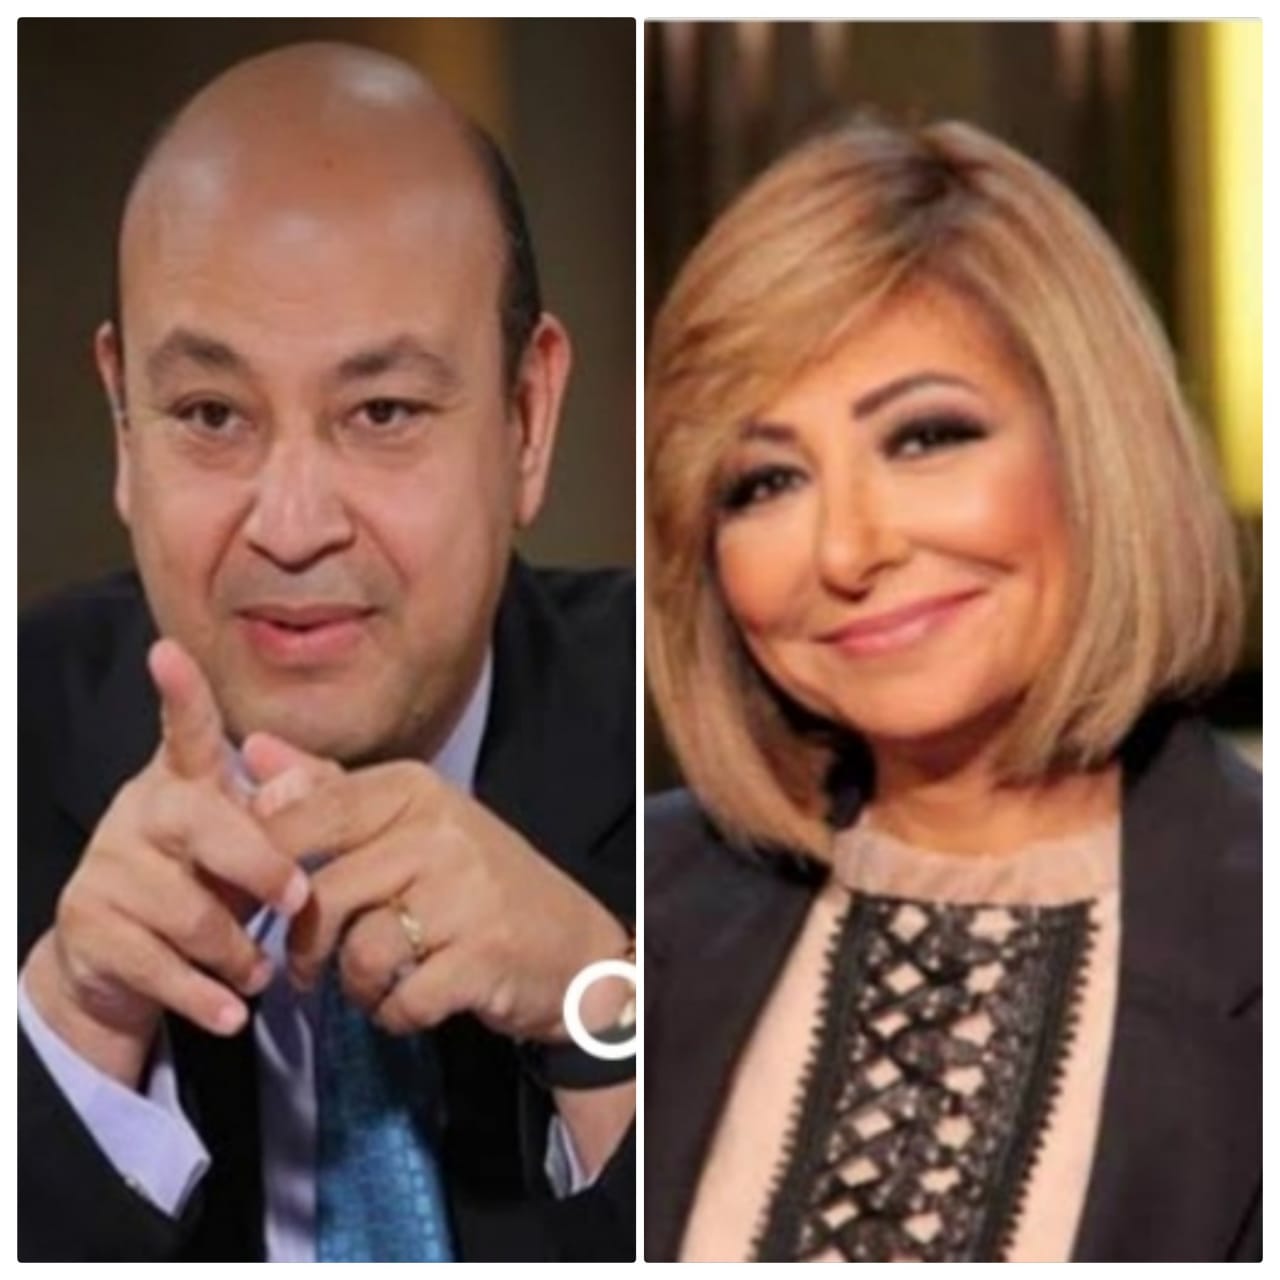   لميس الحديدى وزجها  عمرو أديب يعلنان إصابتهما بكورونا 